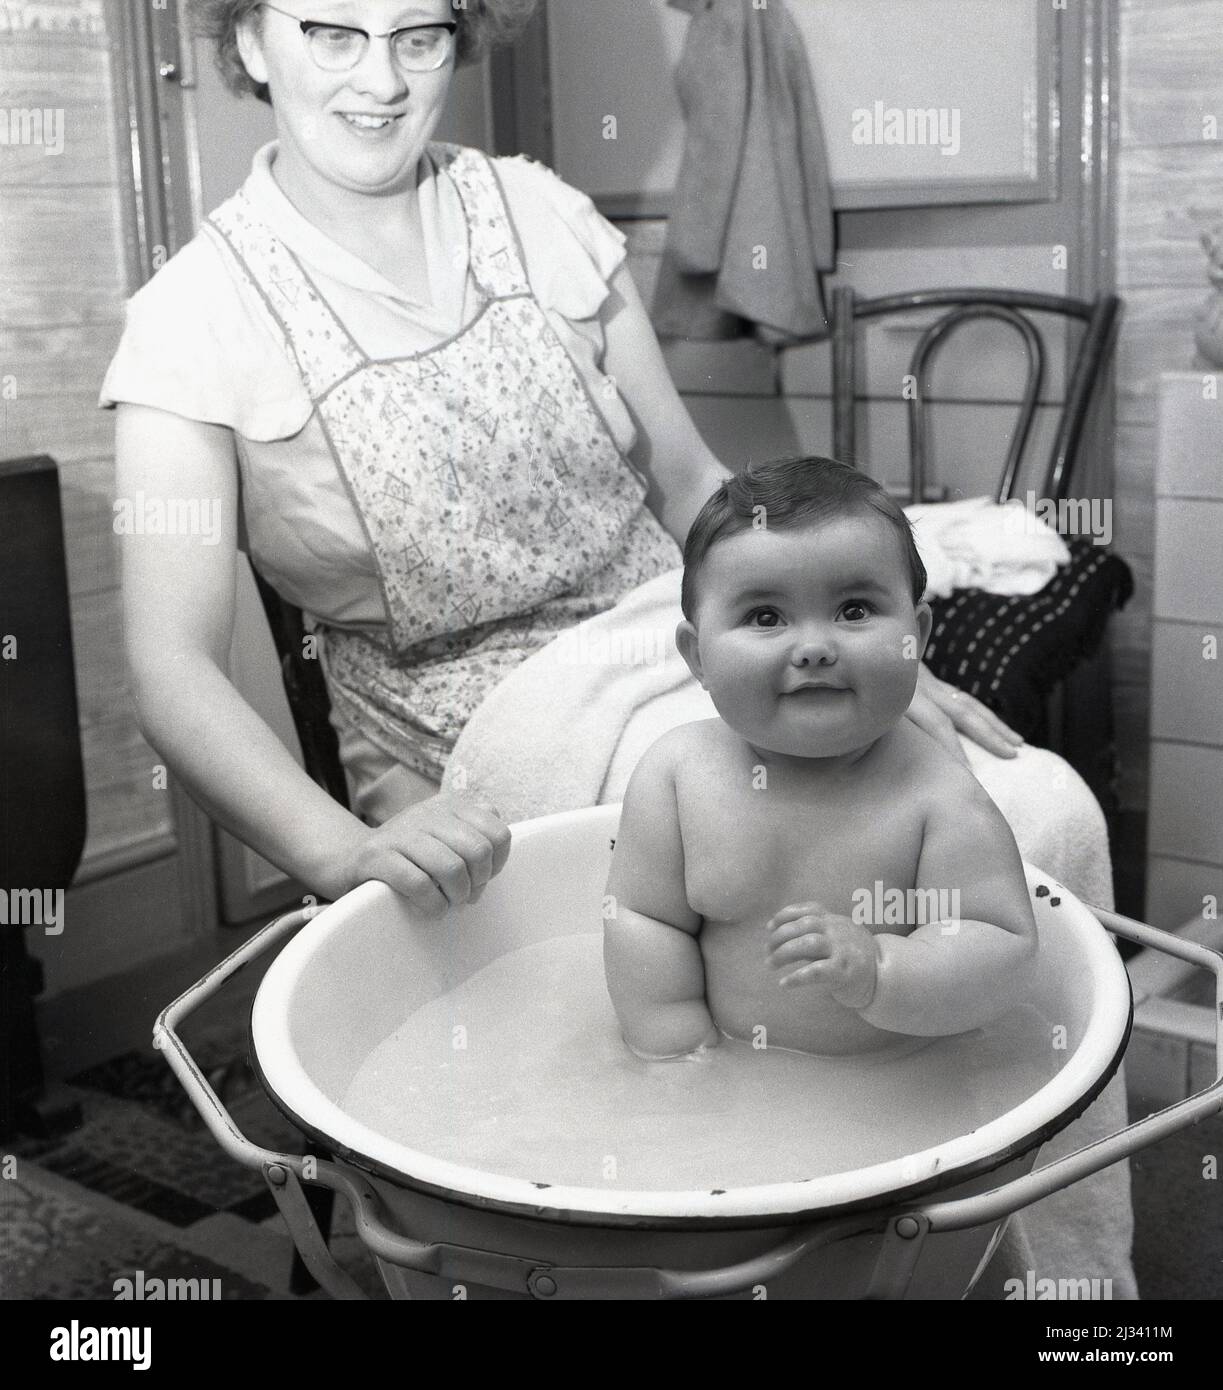 1959, storico, un bambino seduto in una ciotola di smalto in una cornice di metallo che ha un bagno, con la sua madre seduta accanto, portando un pinafore e con un asciugamano sul suo grembo, Stockport, Manchester, Inghilterra, Regno Unito. Foto Stock